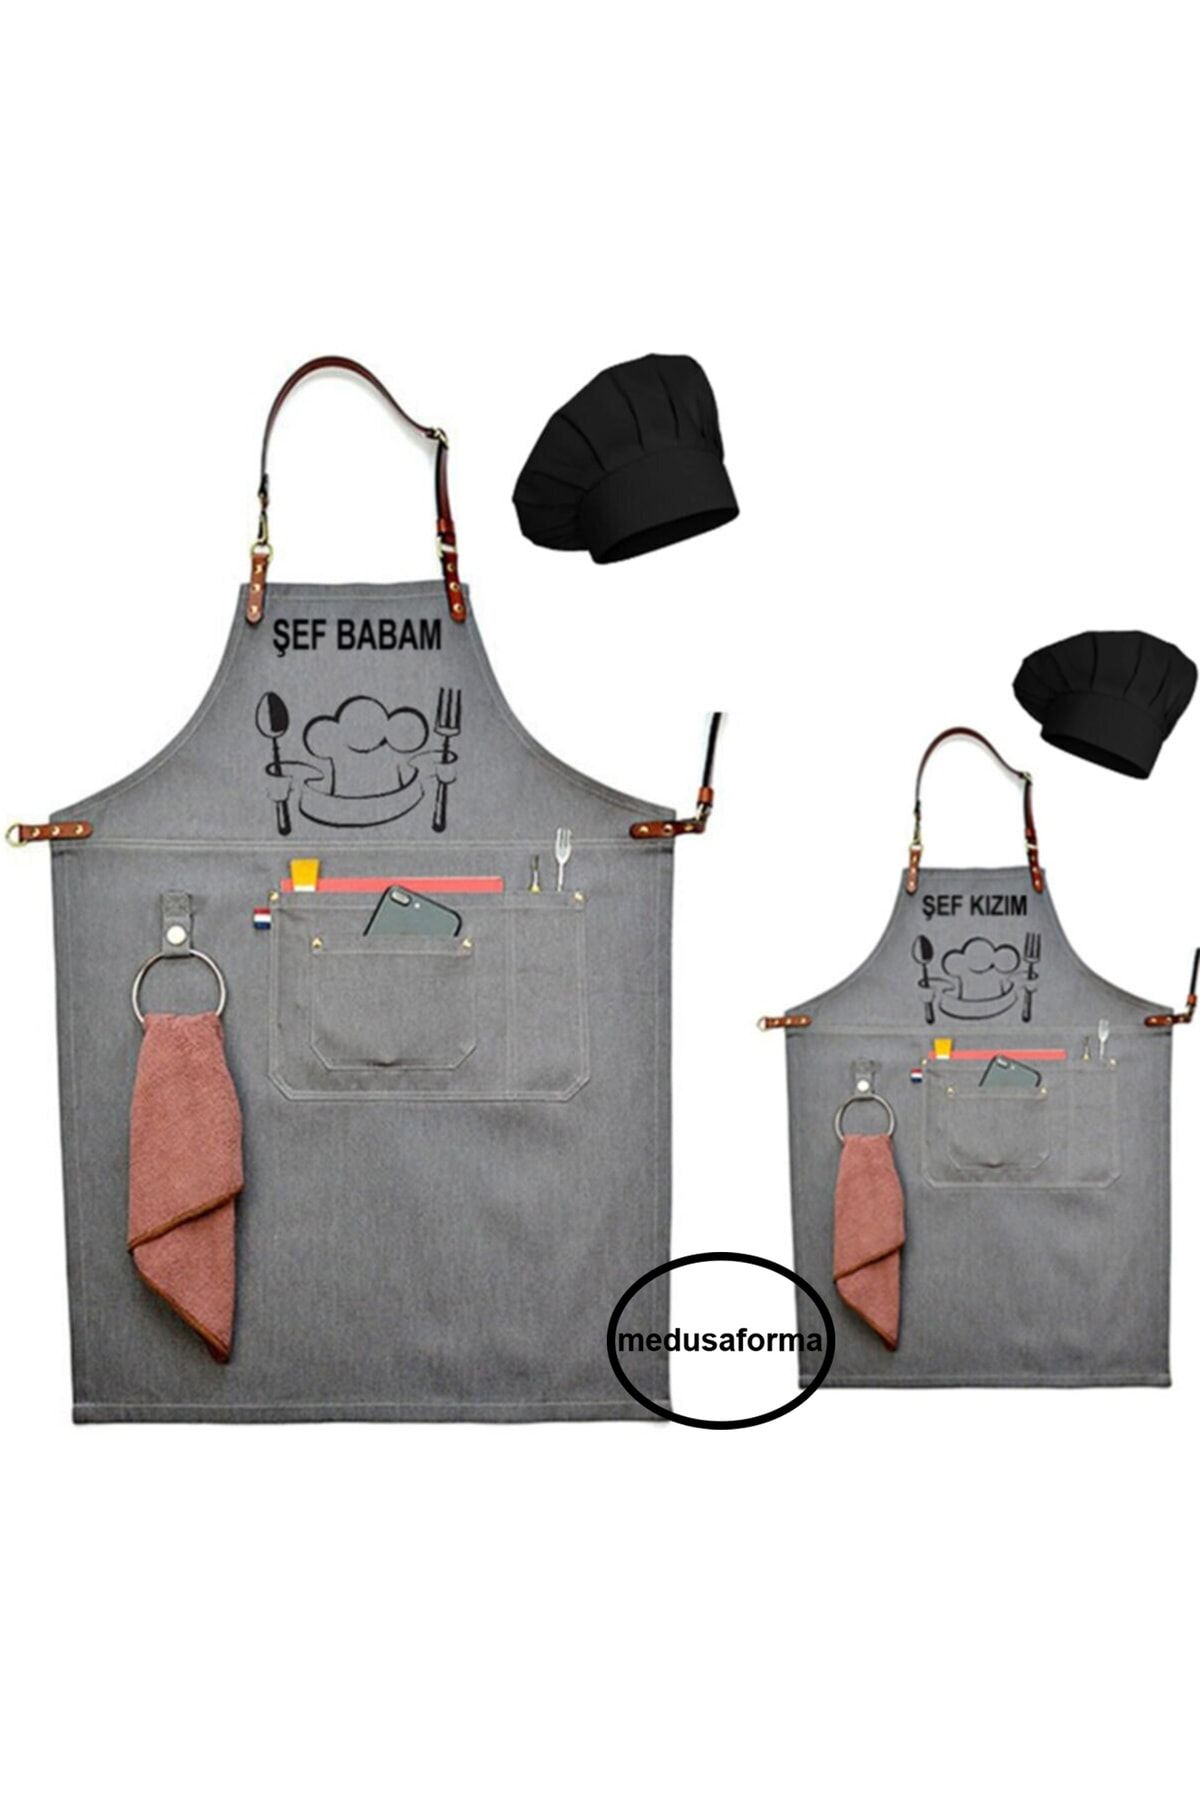 medusaforma Baba Oğul Önlük Takım Çocuk Aşçı Kıyafeti Master Şef Mutfak Önlüğü Chef Önlük Kombinleri - Gri